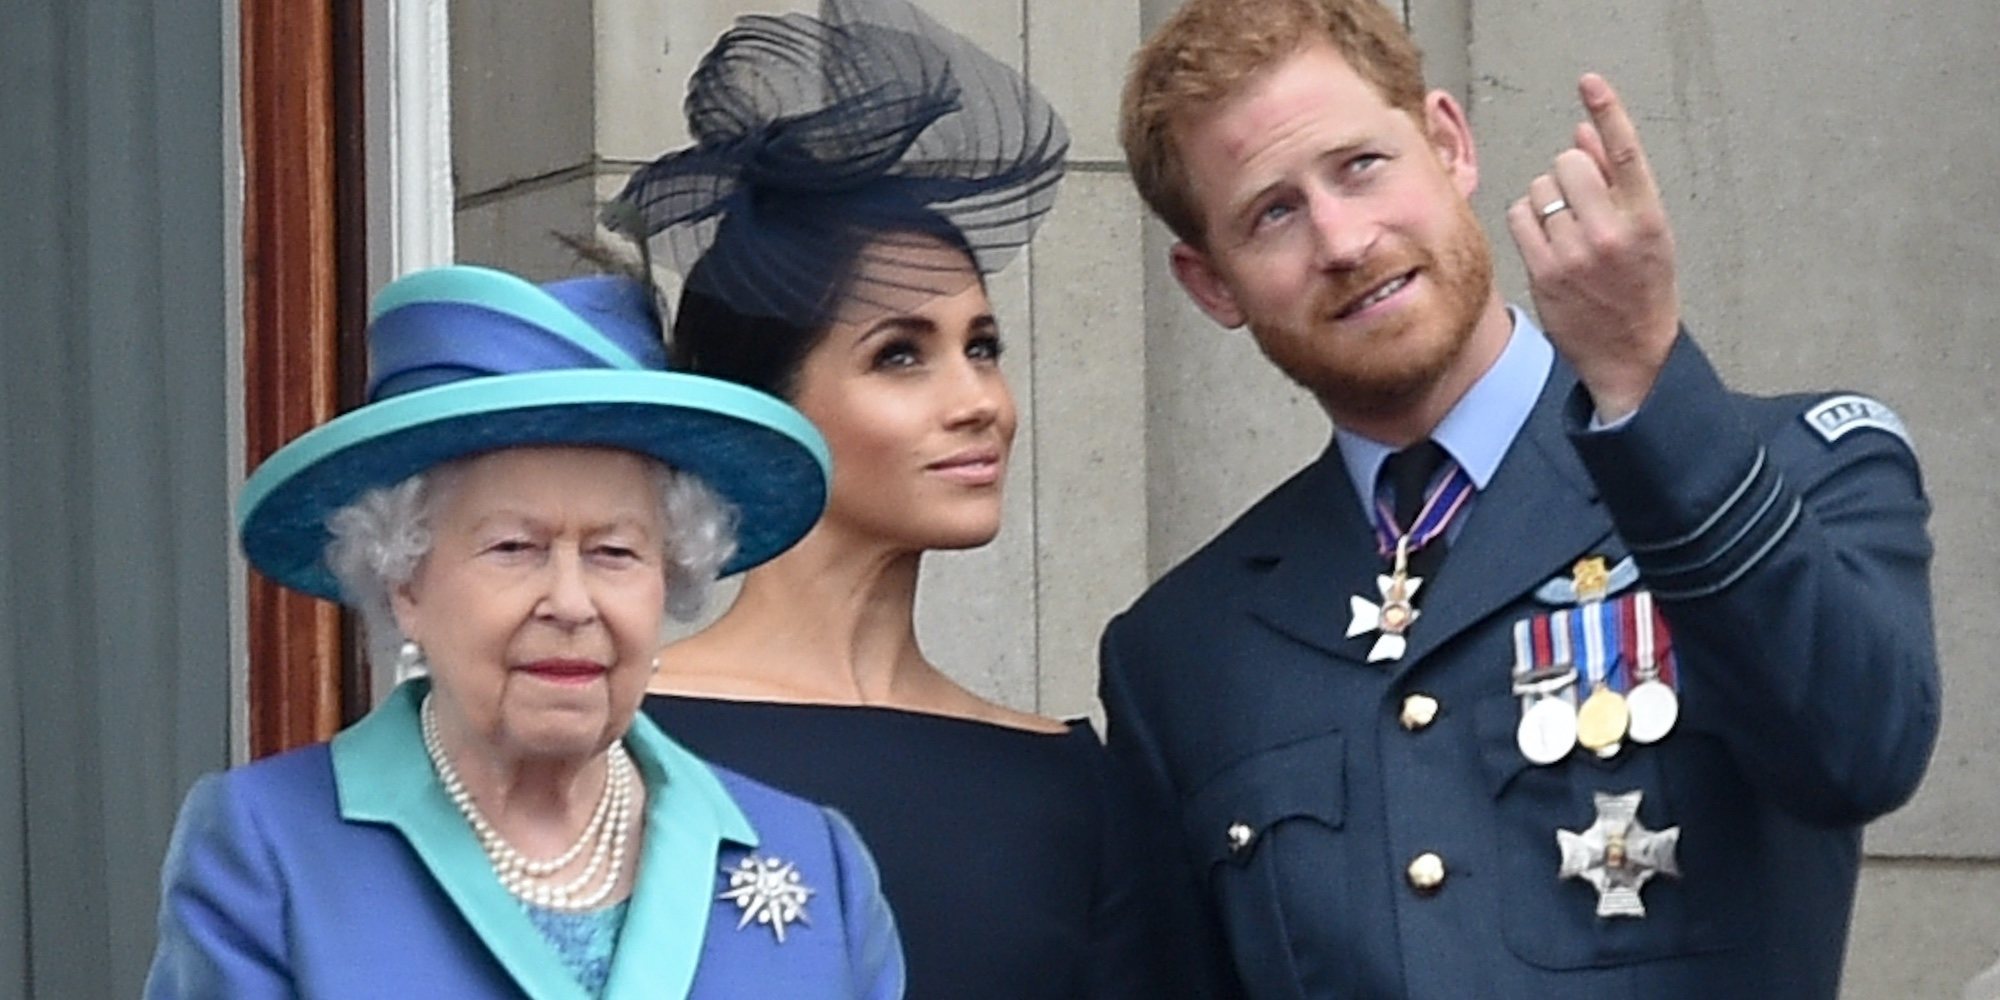 La Reina Isabel apoya al Príncipe Harry y Meghan Markle en un comunicado: "Respetamos su deseo"